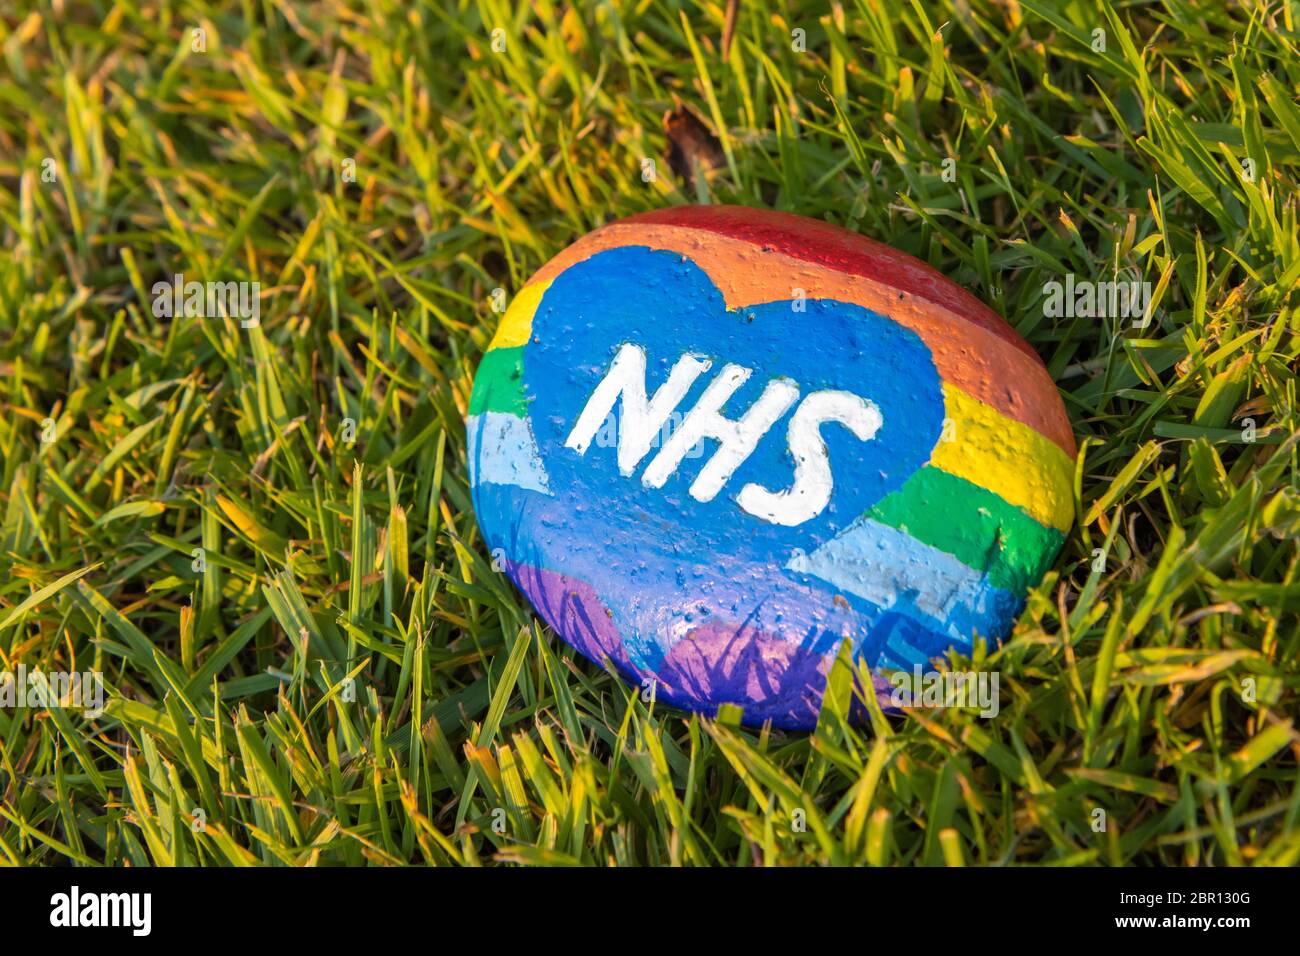 Hommage arc-en-ciel NHS peint sur une pierre pendant la pandémie du coronavirus Banque D'Images